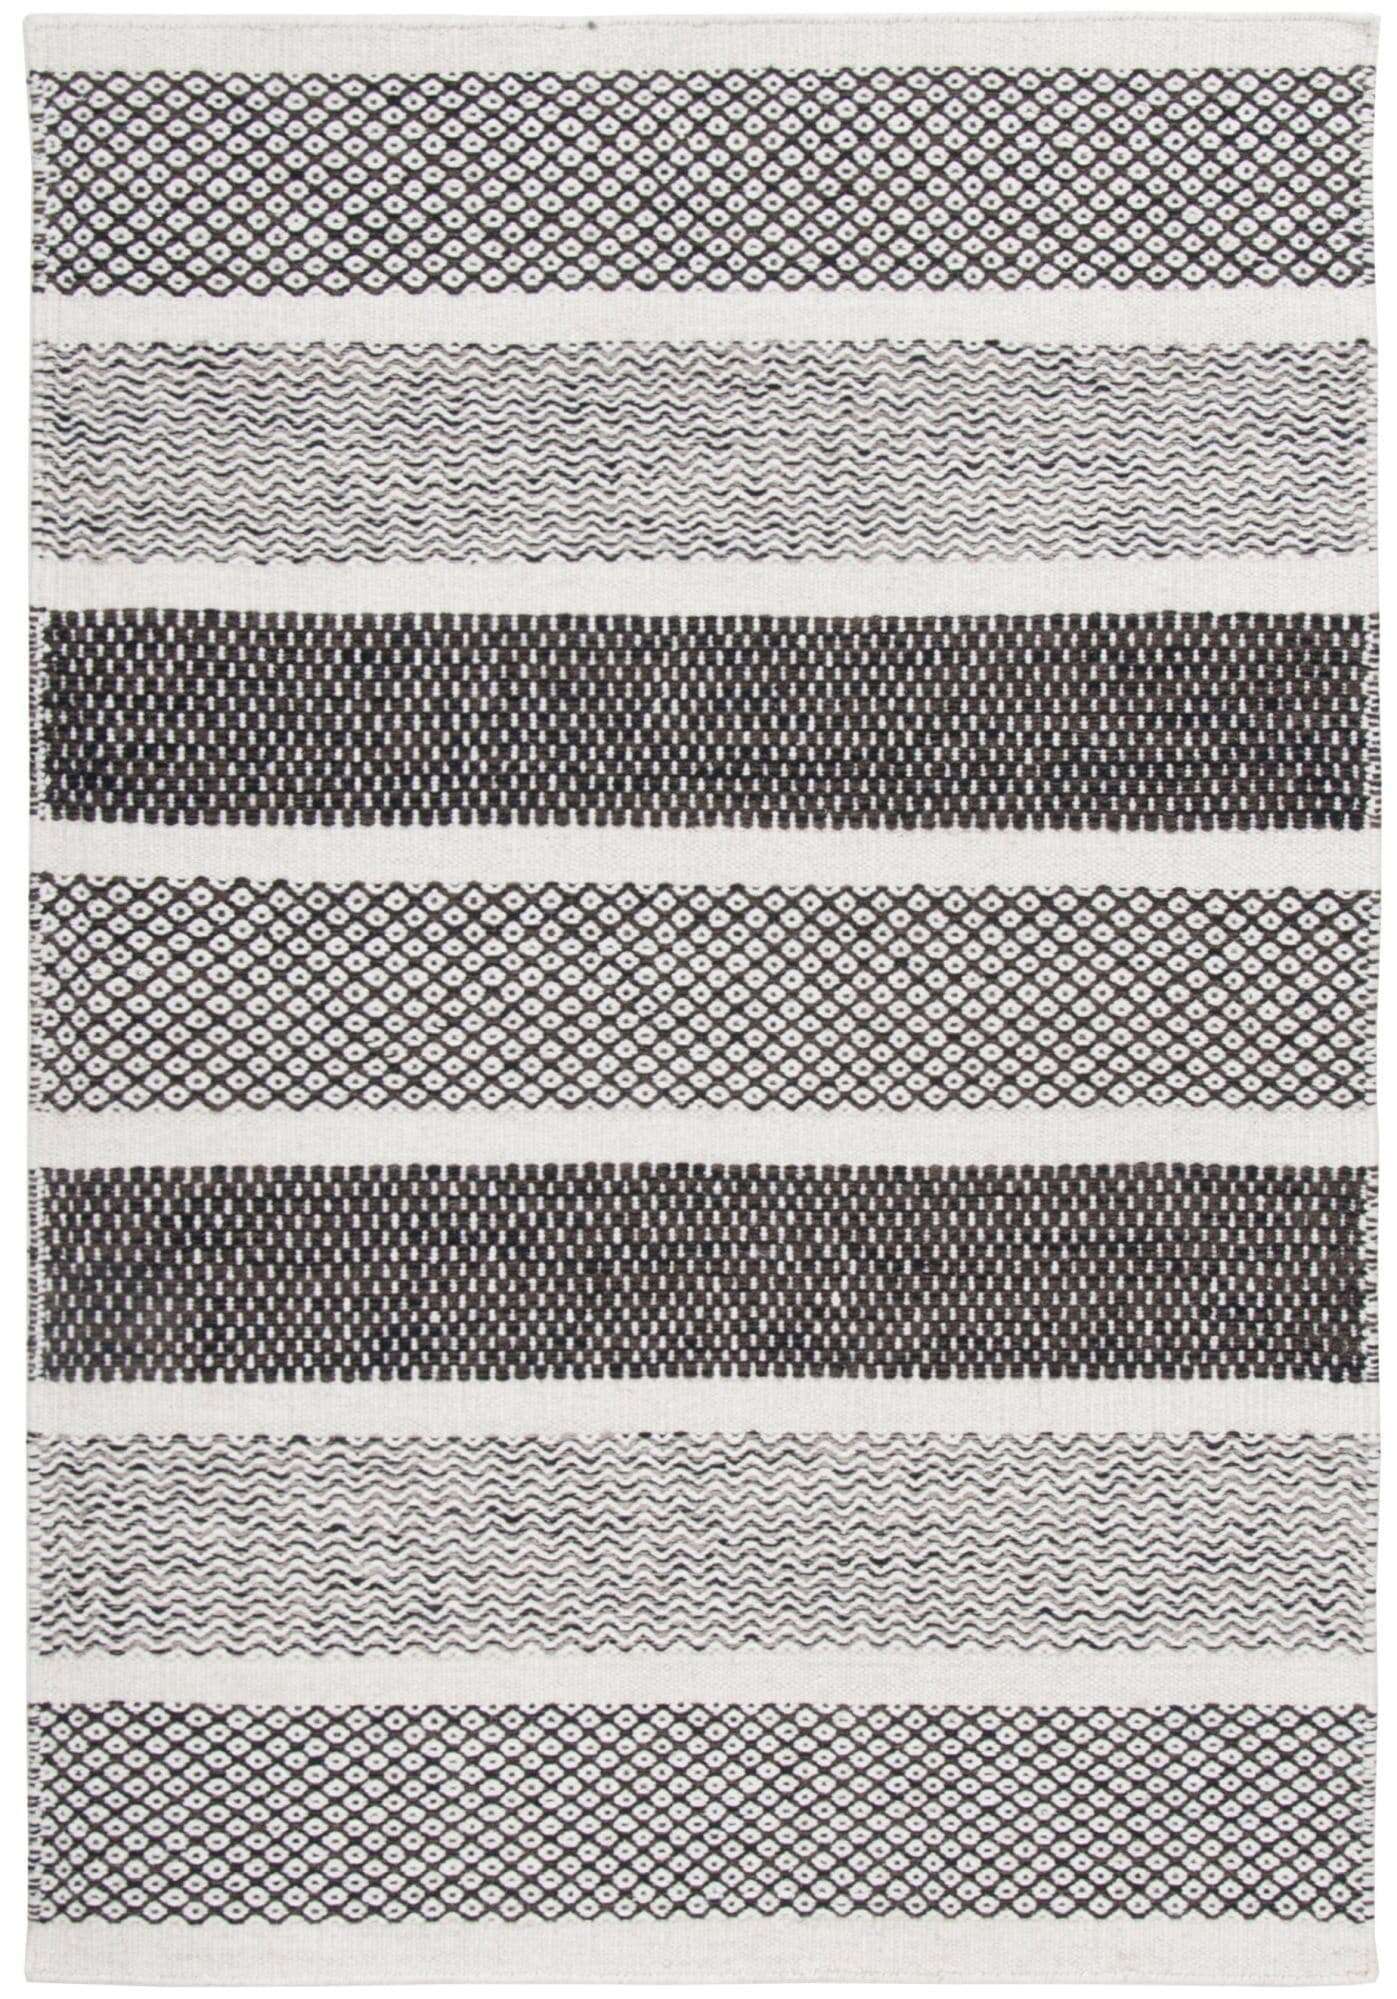 Trondheim Design-03 Teppich handgewebt aus reiner Wolle